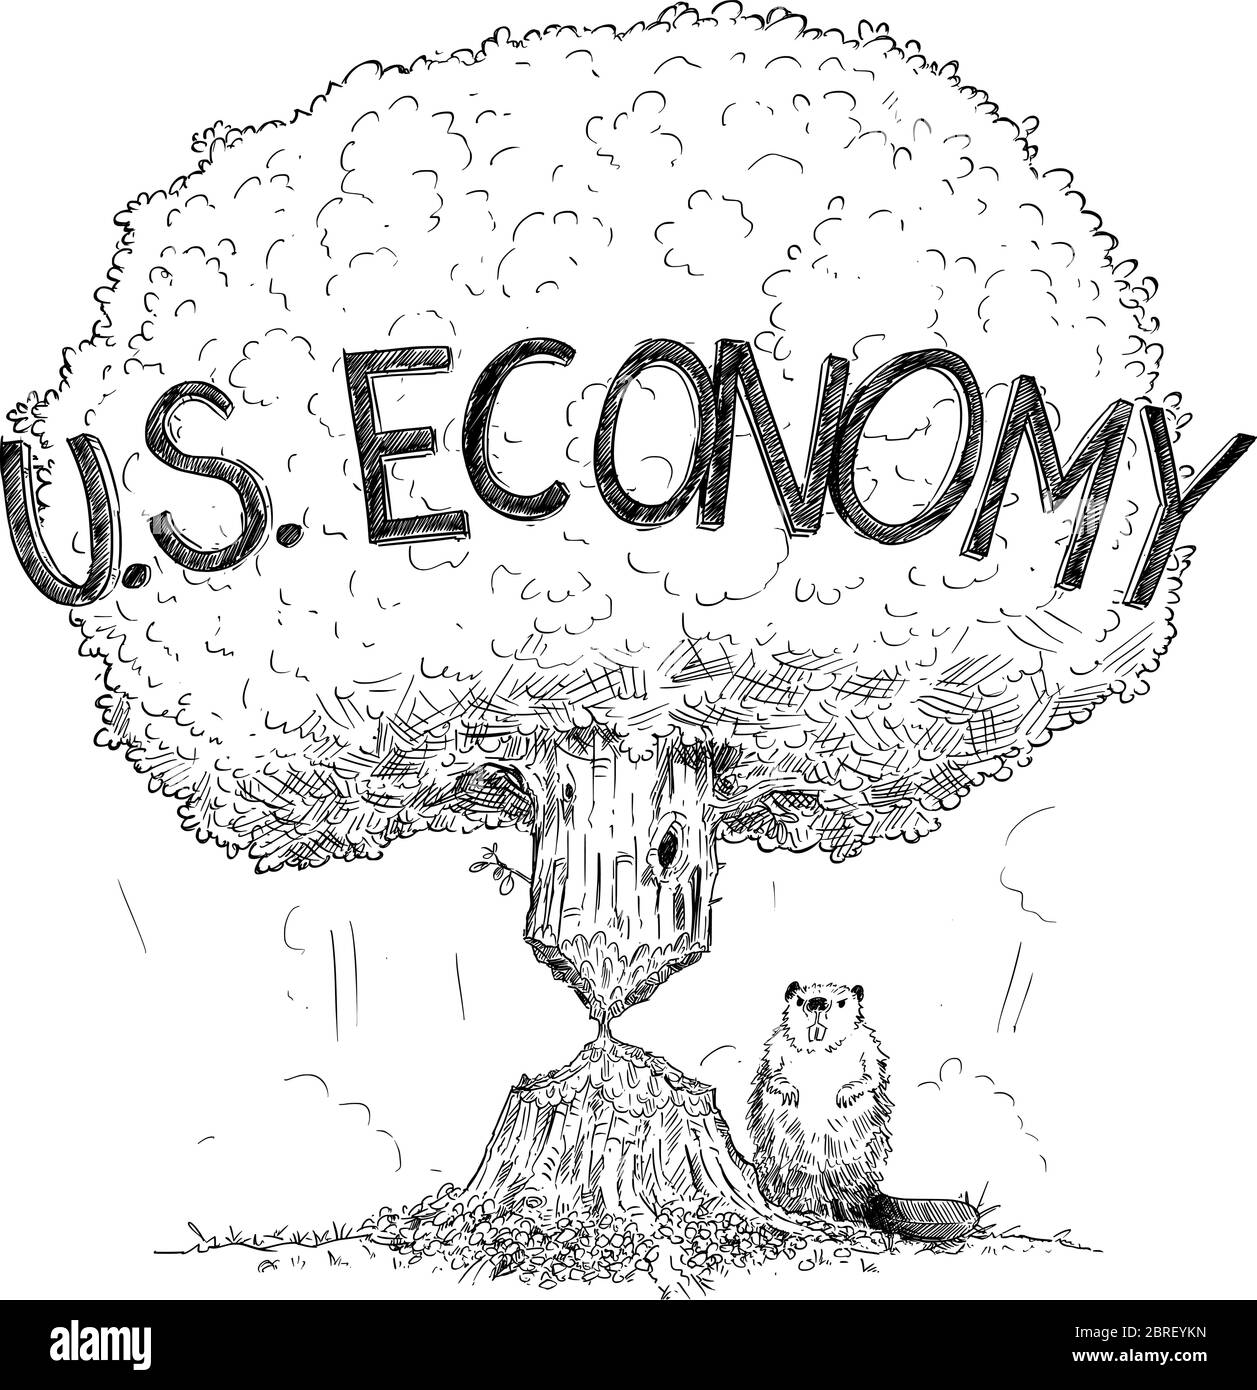 Disegno vettoriale cartoon illustrazione concettuale di albero che rappresenta l'economia degli Stati Uniti indebolita dalla crisi come castori. Concetto di crisi finanziaria, debito o coronavirus negli Stati Uniti d'America. Illustrazione Vettoriale